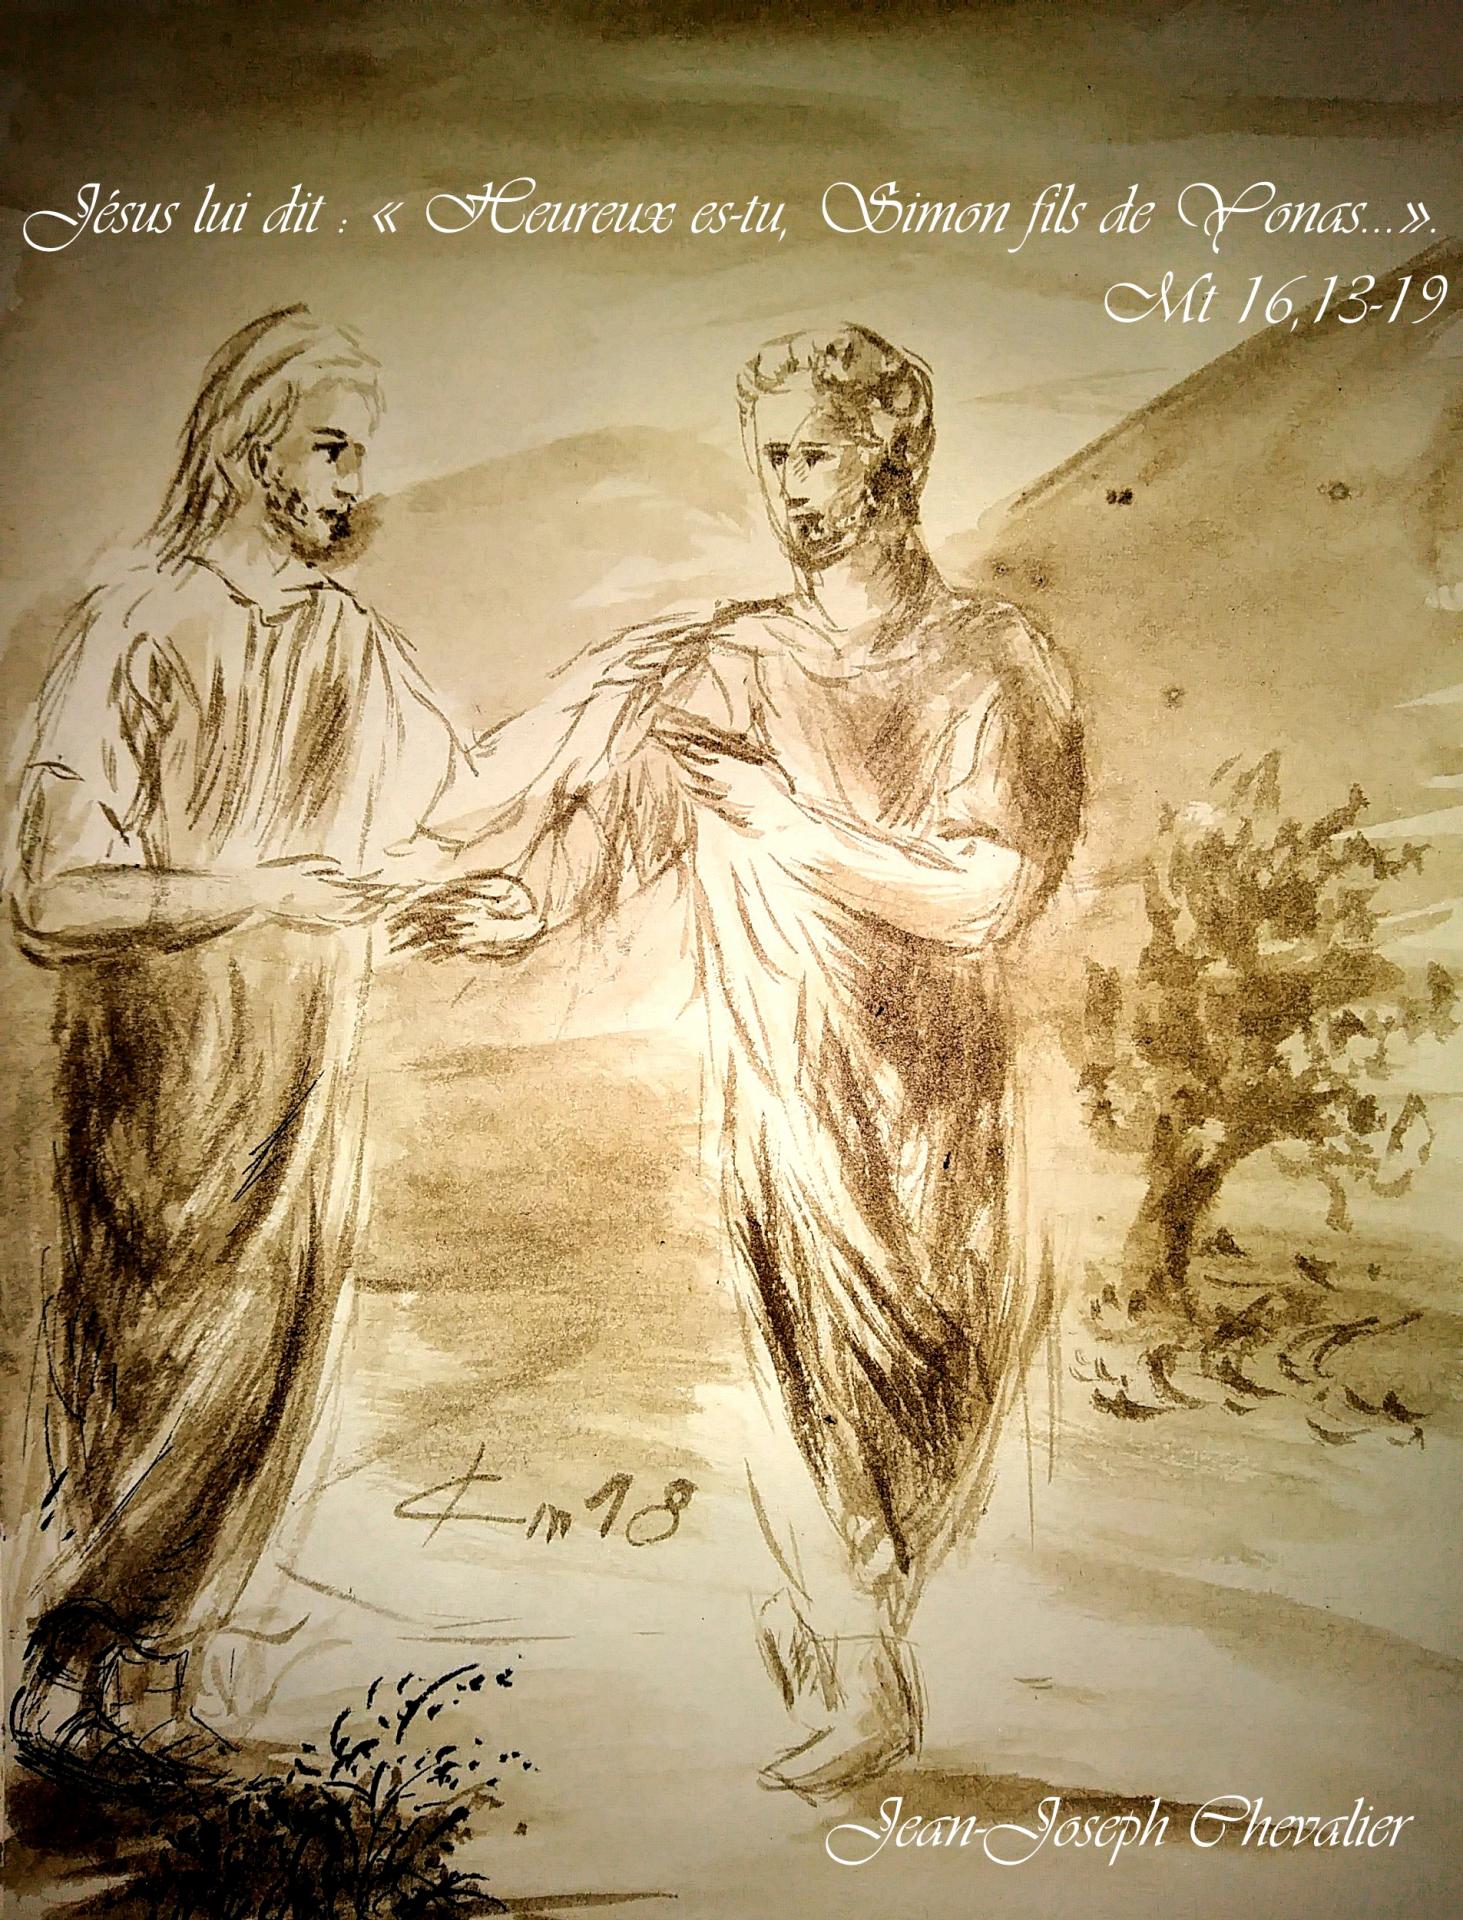 29 Juin 2018, évangile du jour illustré par un dessin au lavis